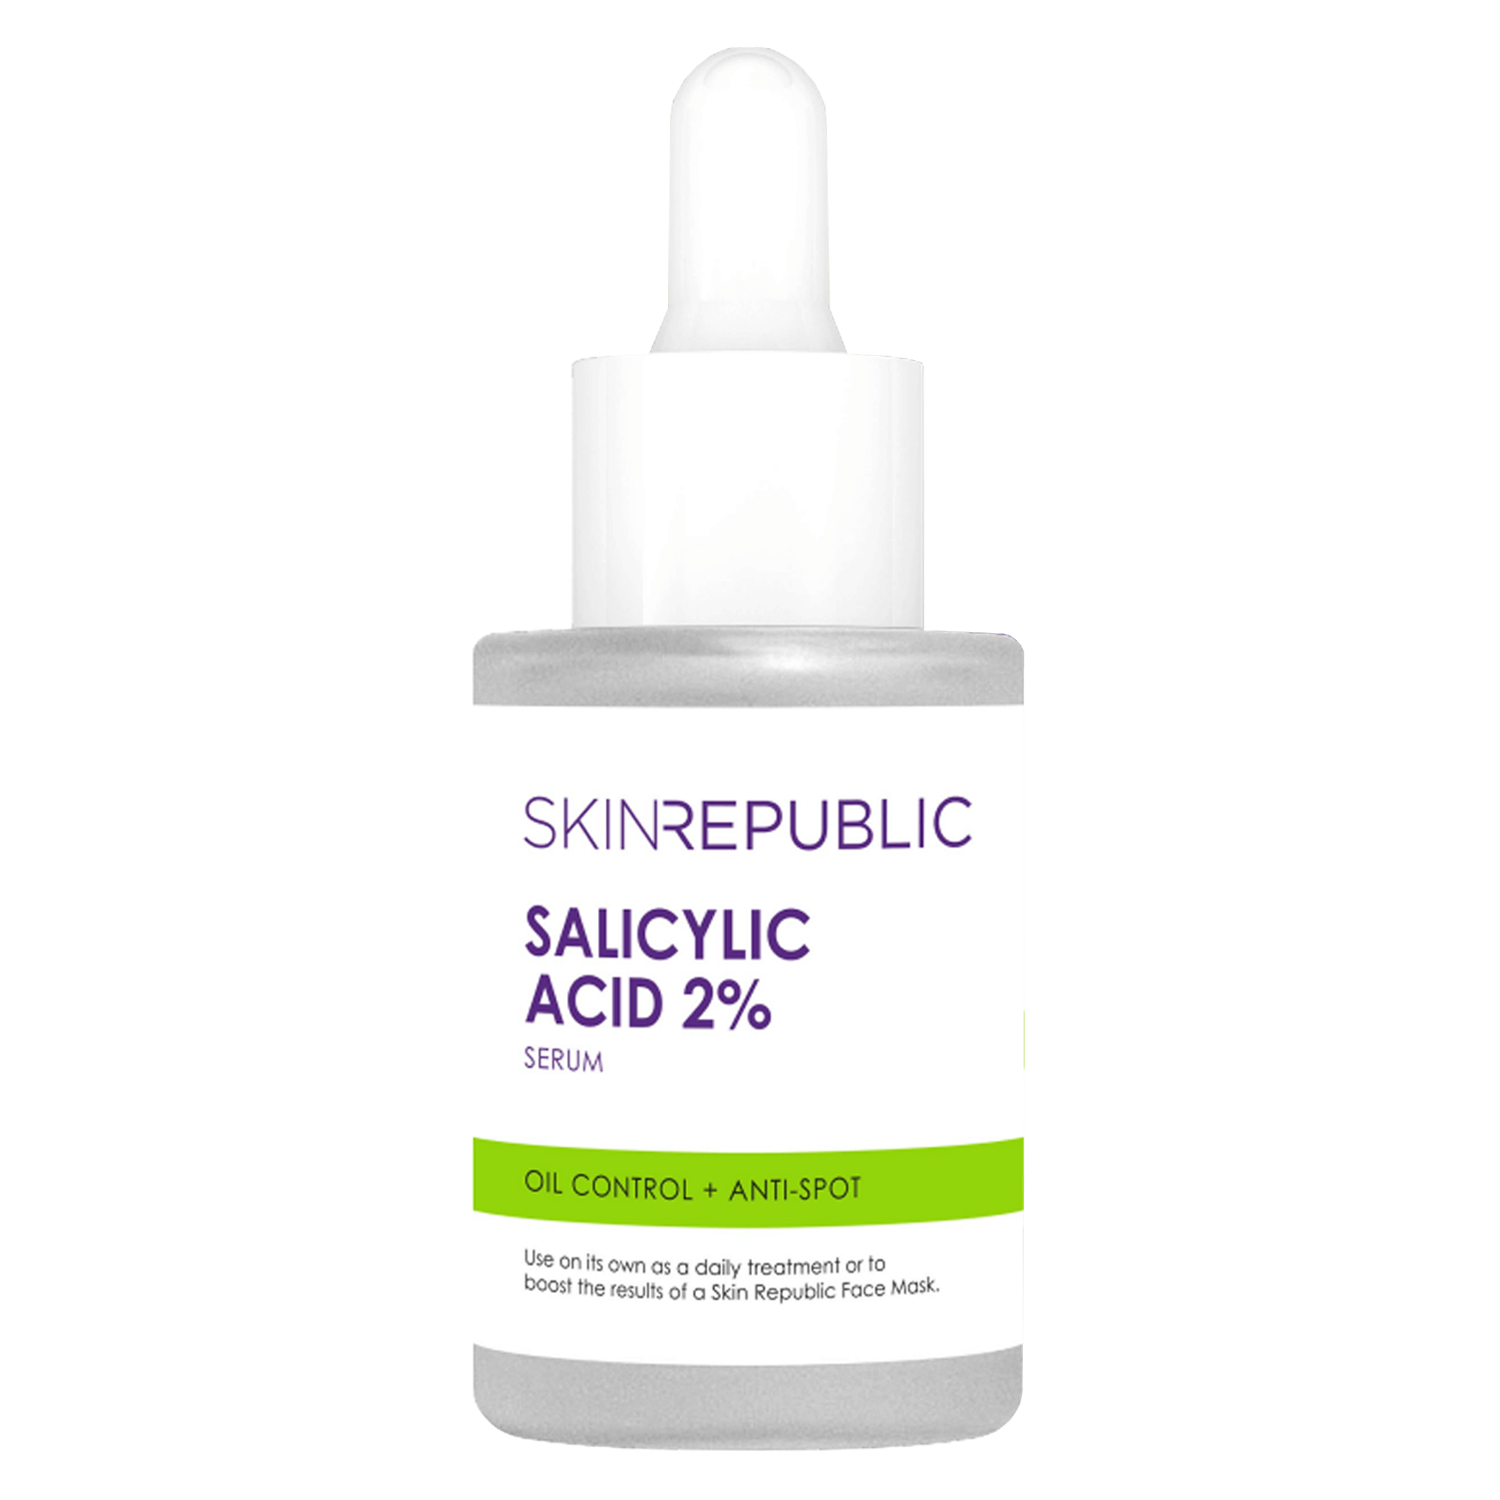 Produktbild von Skin Republic - Salicylic Acid 2% Serum